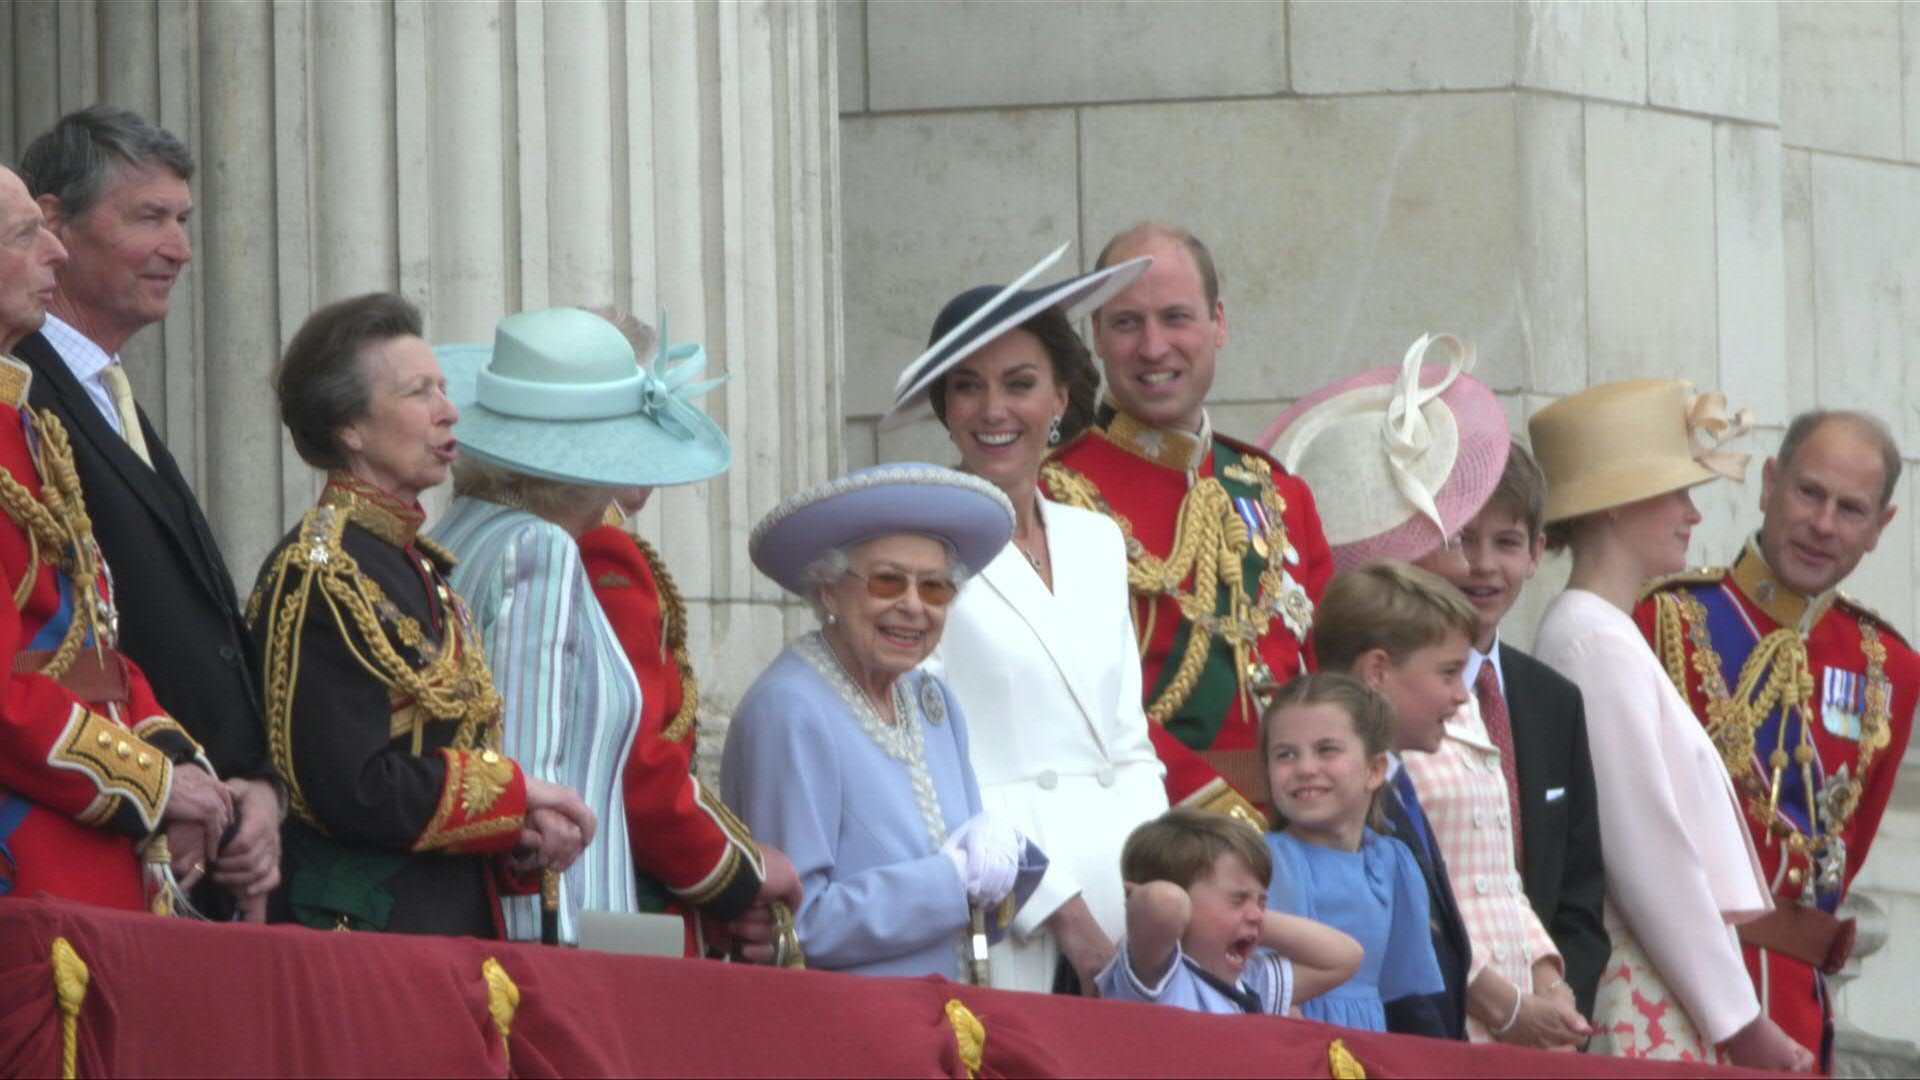 Aclamada el jueves por una inmensa multitud en Londres, Isabel II canceló, debido a "cierto malestar" de salud, su asistencia a la misa del viernes por sus 70 años de reinado, una longevidad sin precedentes para la monarquía británica.